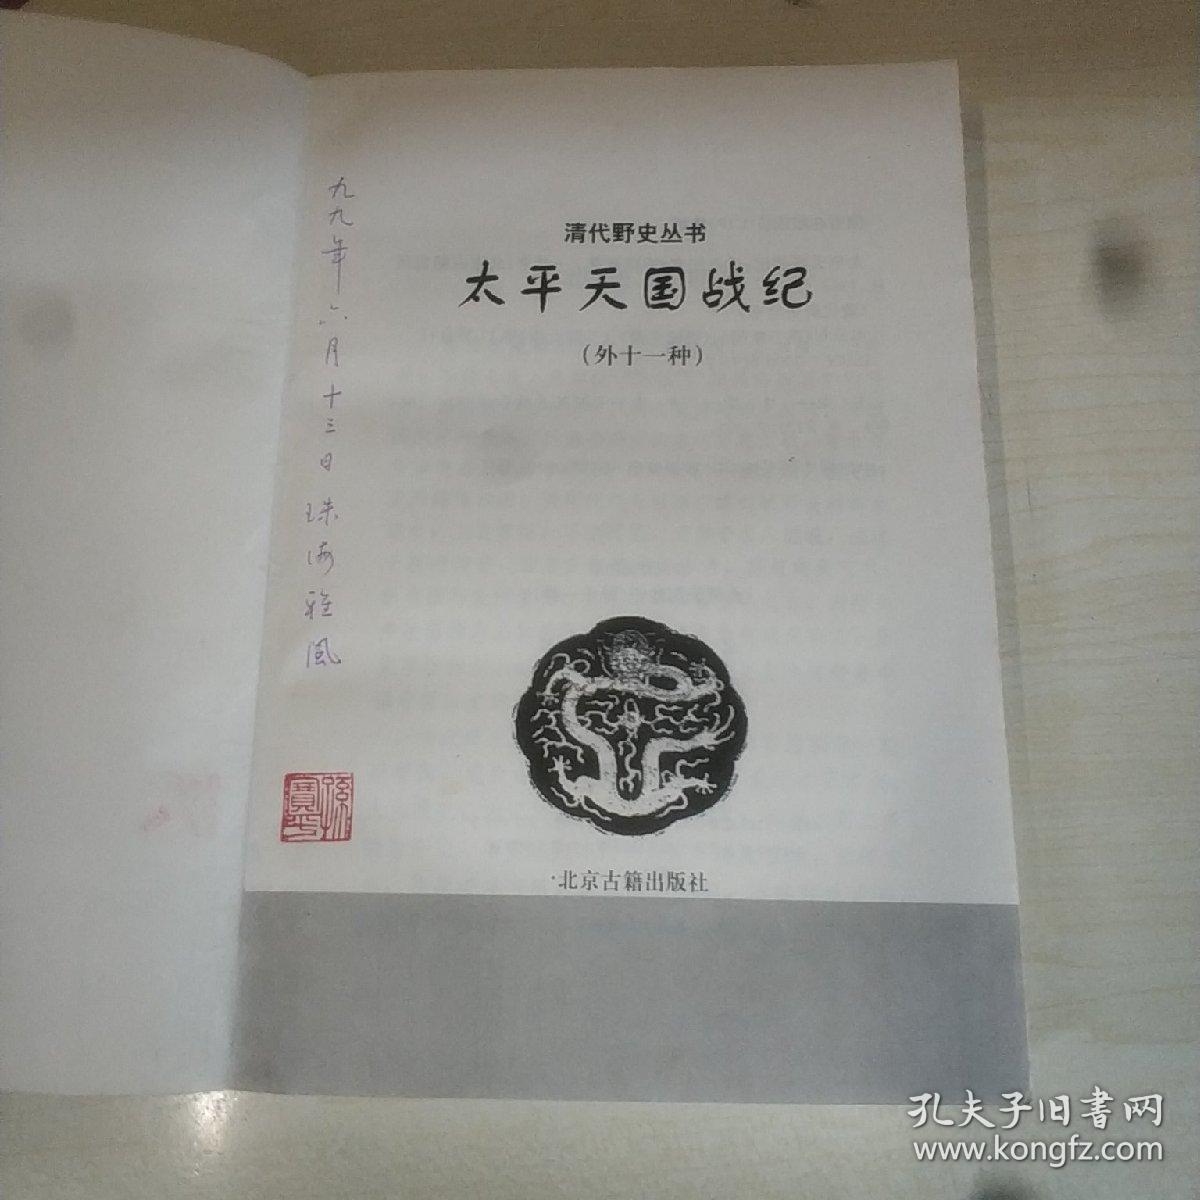 太平天国战纪(外十一种) 北京古籍出版社 清代野史丛书